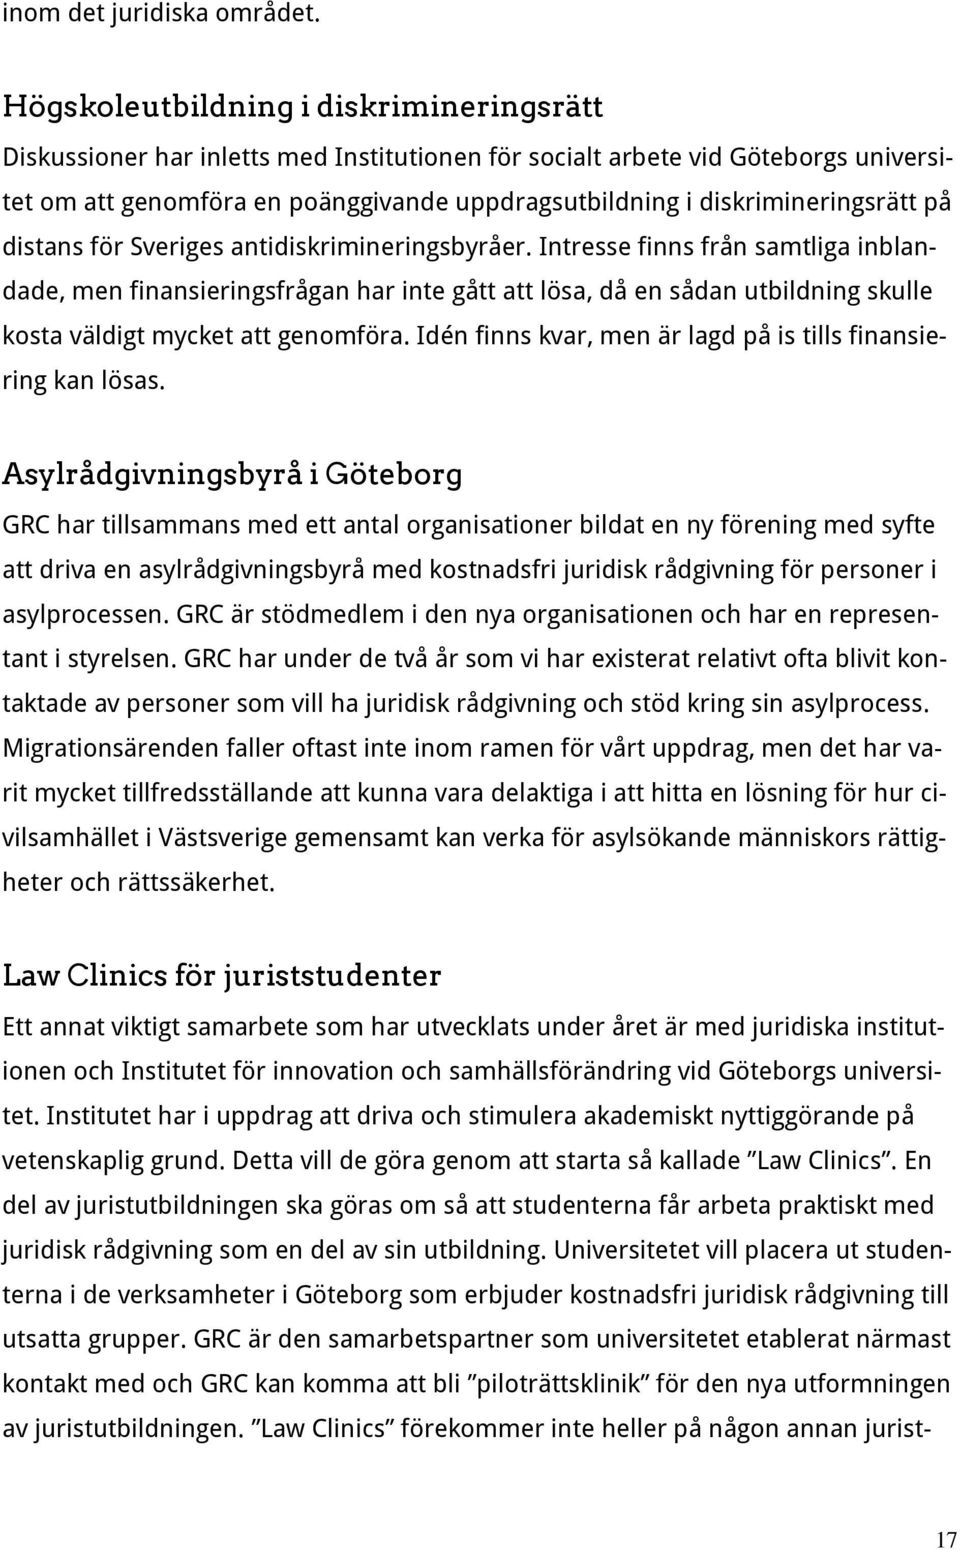 diskrimineringsrätt på distans för Sveriges antidiskrimineringsbyråer.